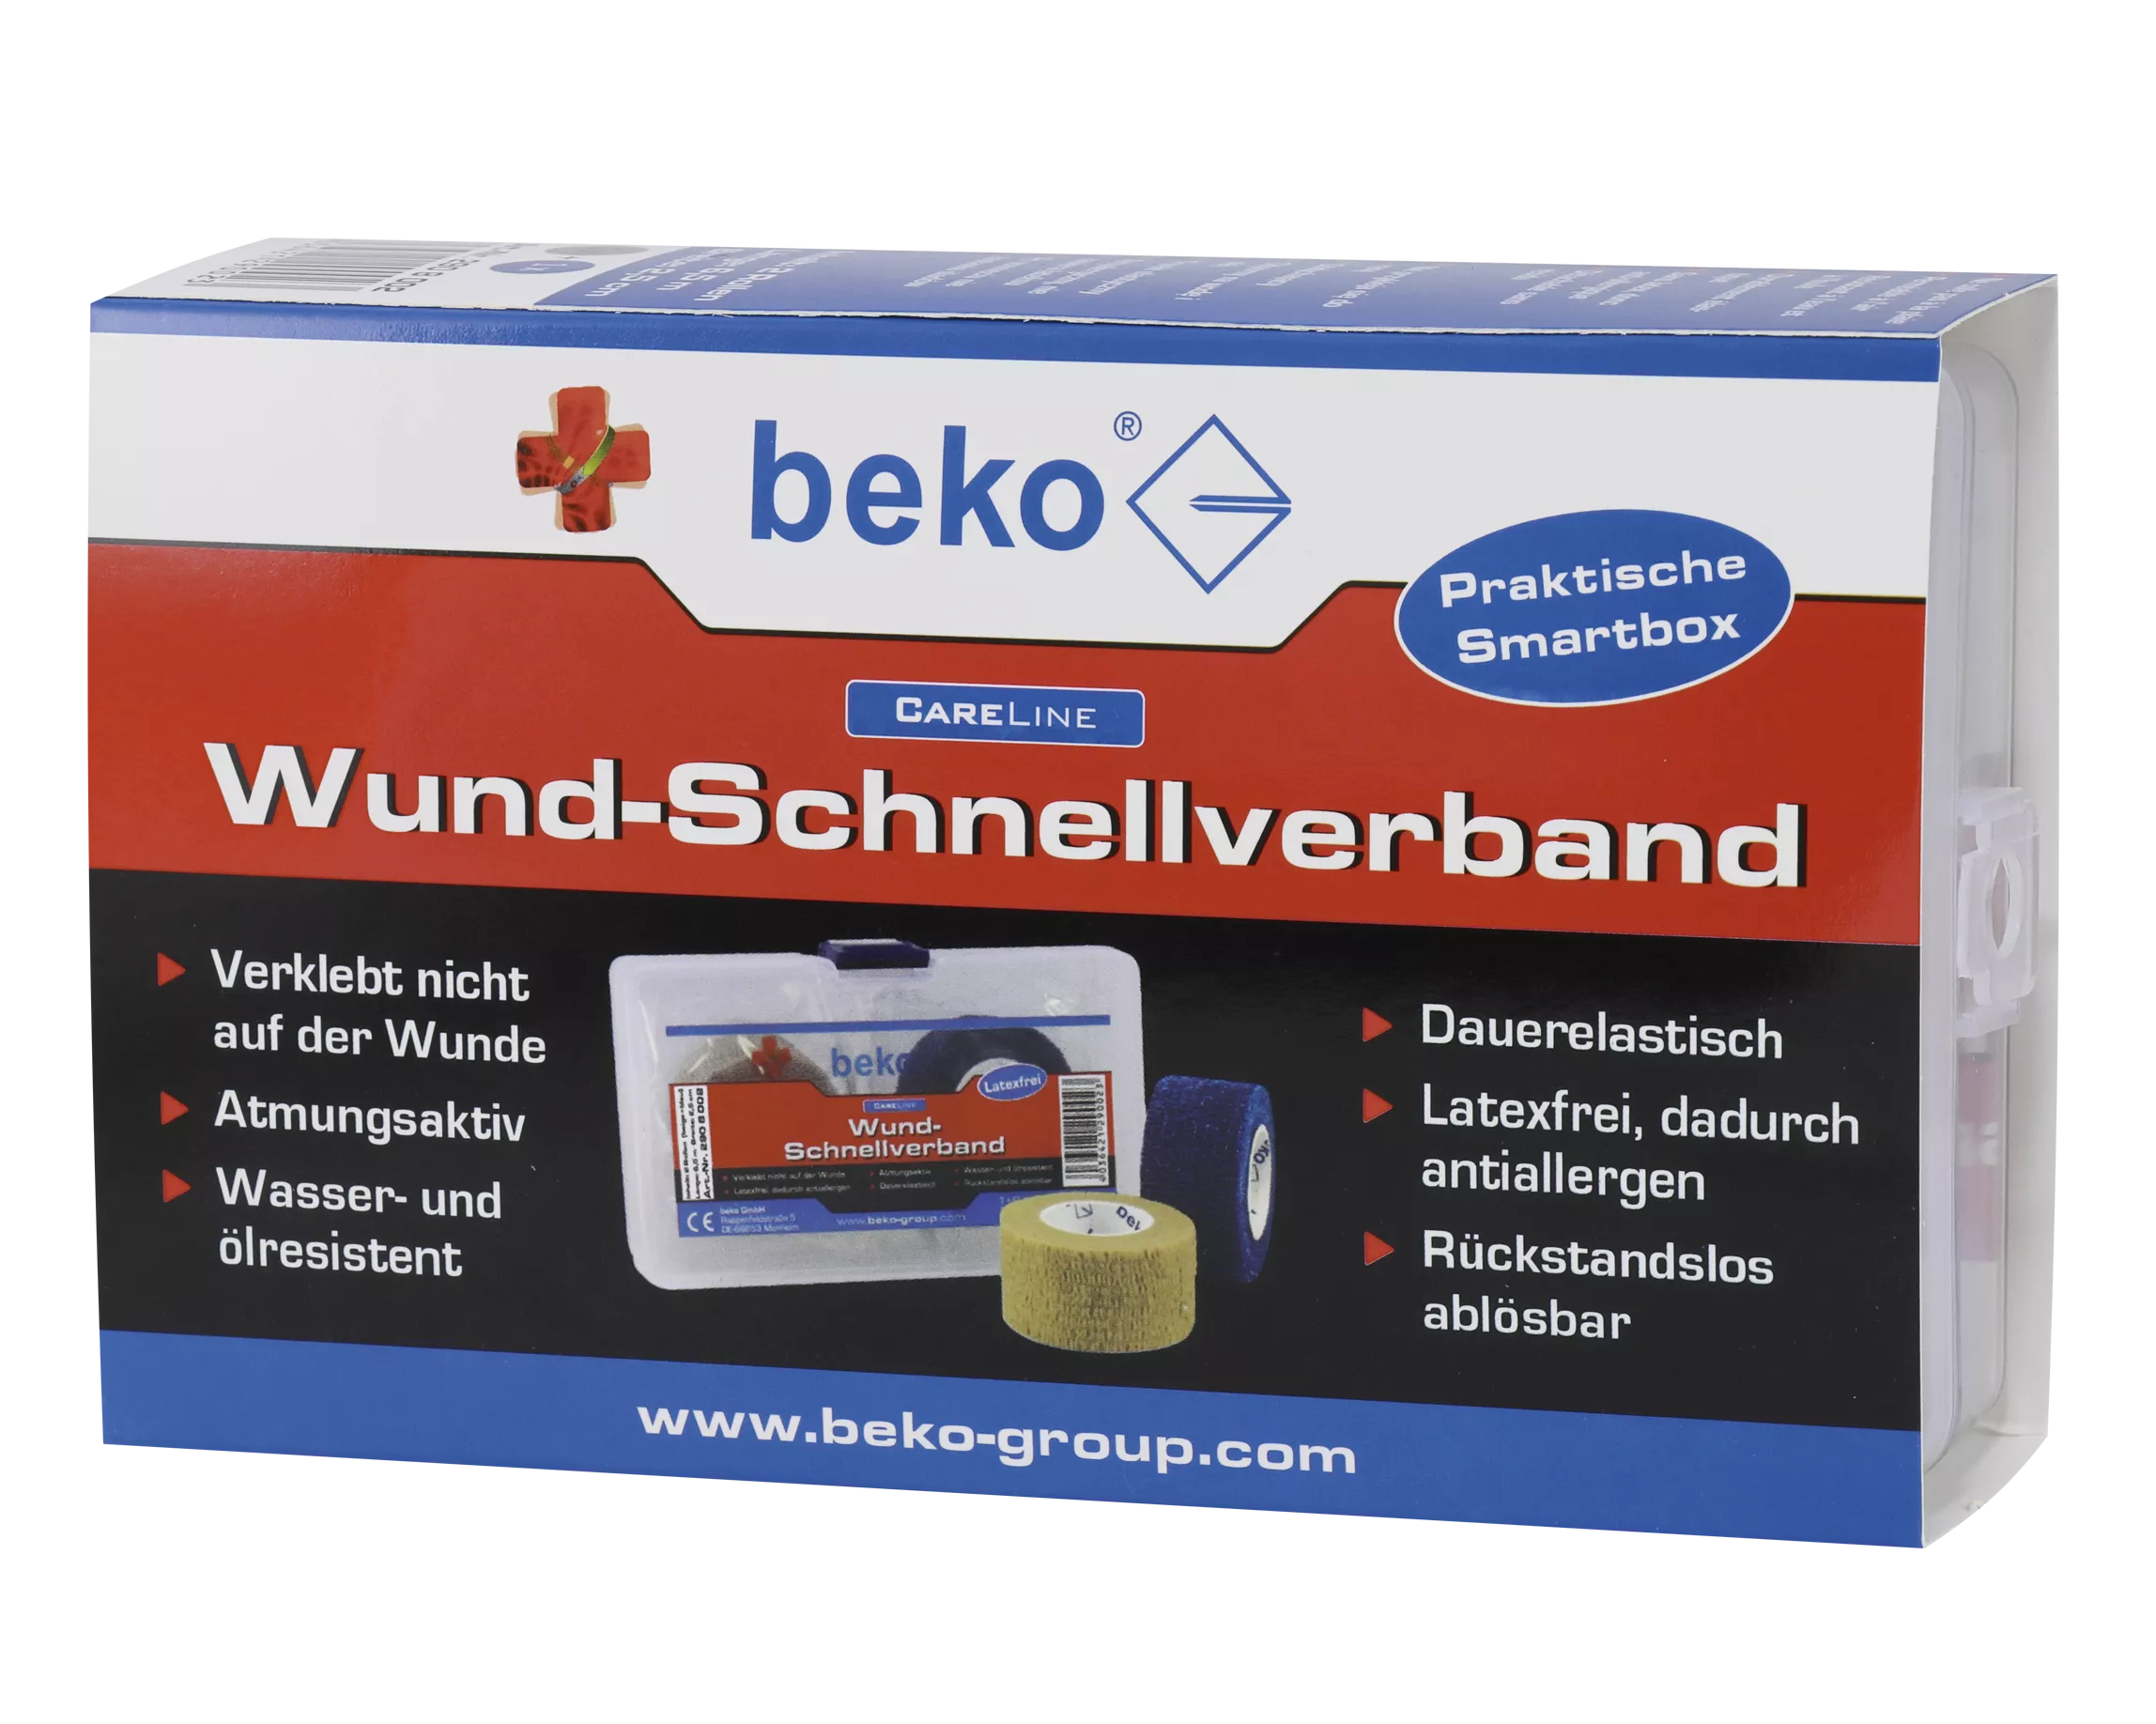 beko CareLine Wund-Schnellverband Box, 2 Rol. à 4,50 m beige/blau DE/IT/FR/PL/EN